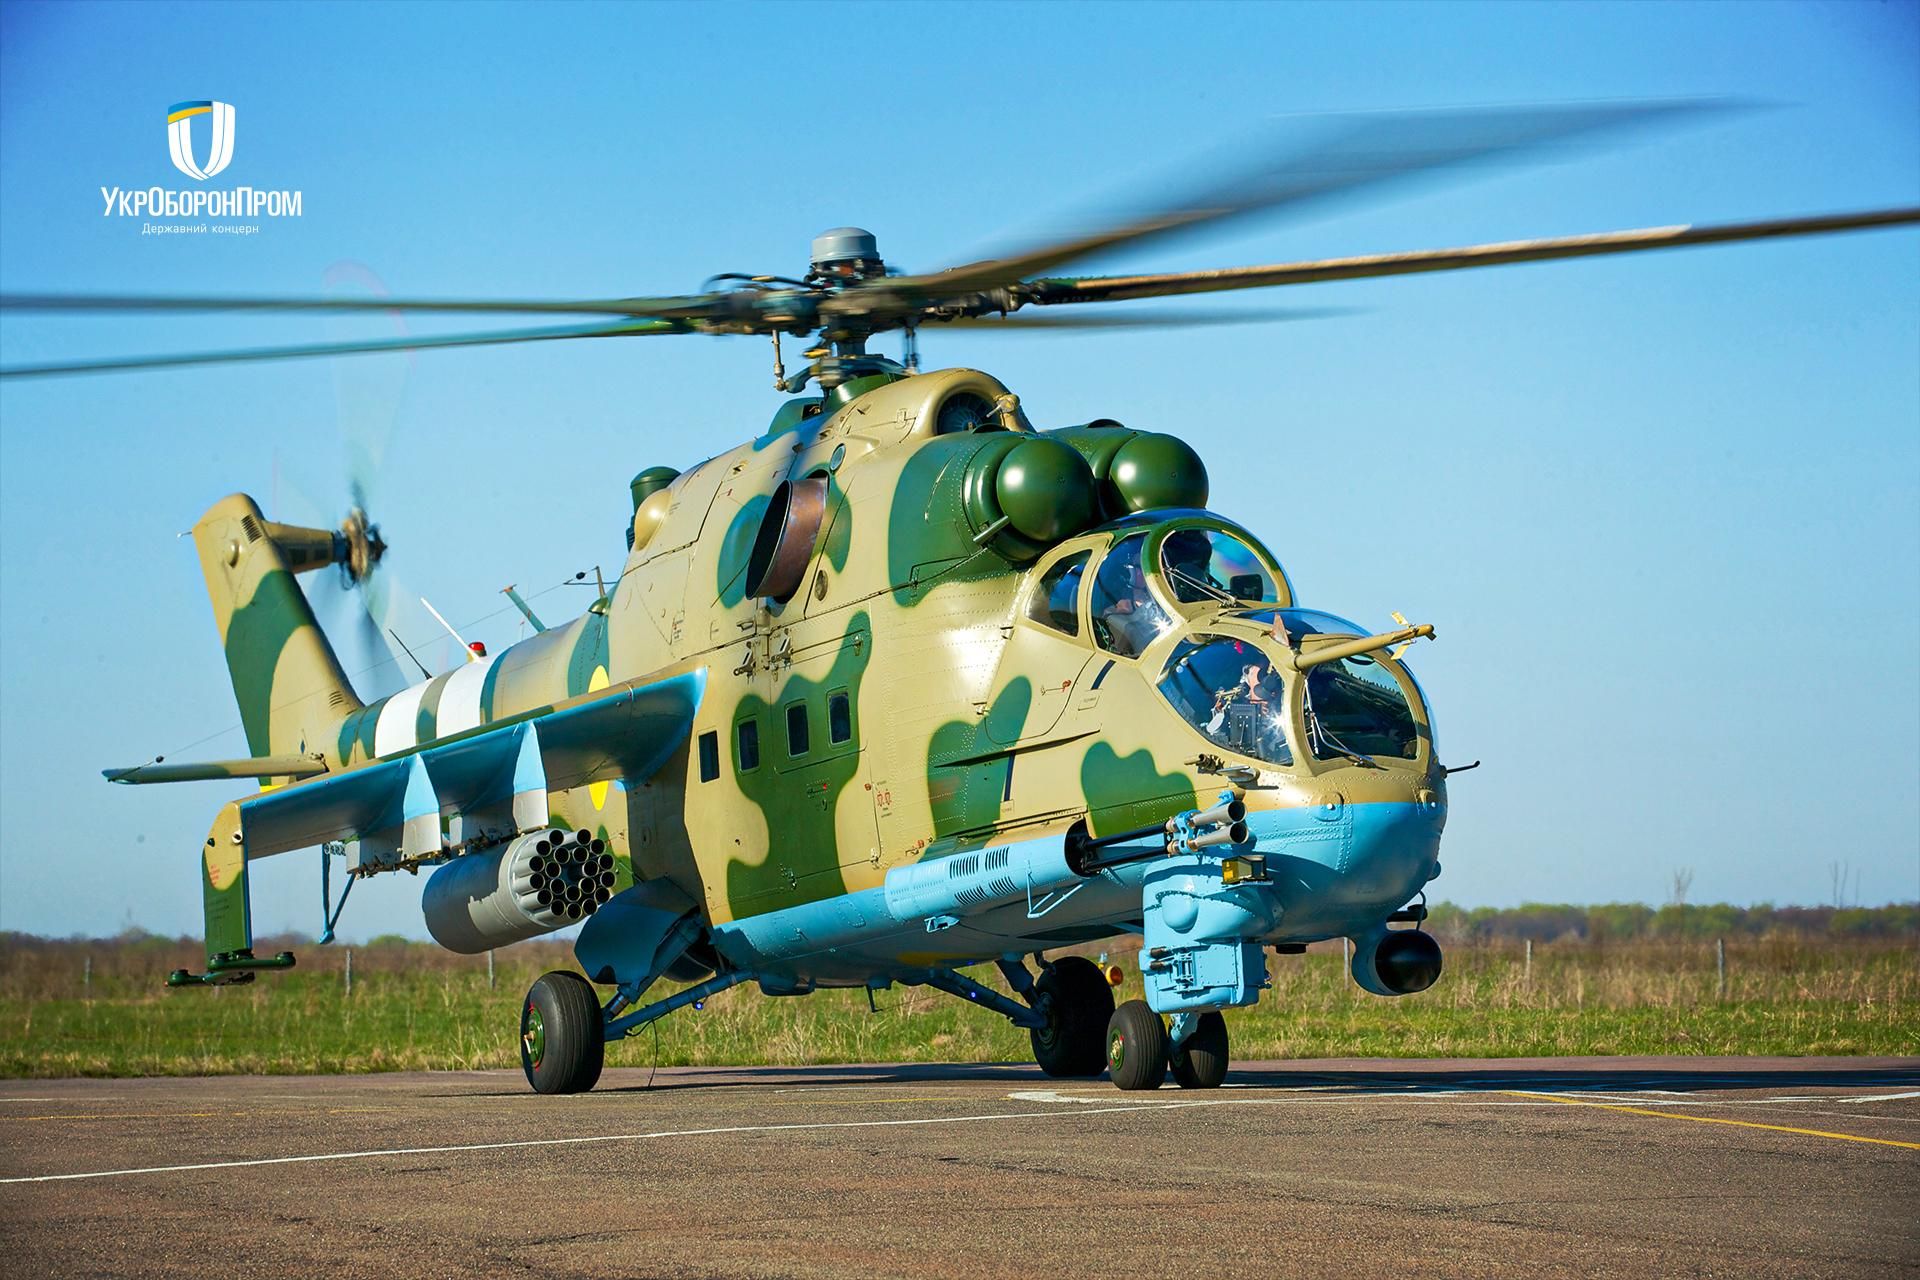 ВСУ передали партию модернизированных вертолетов Ми-24ПУ1 - Инновации